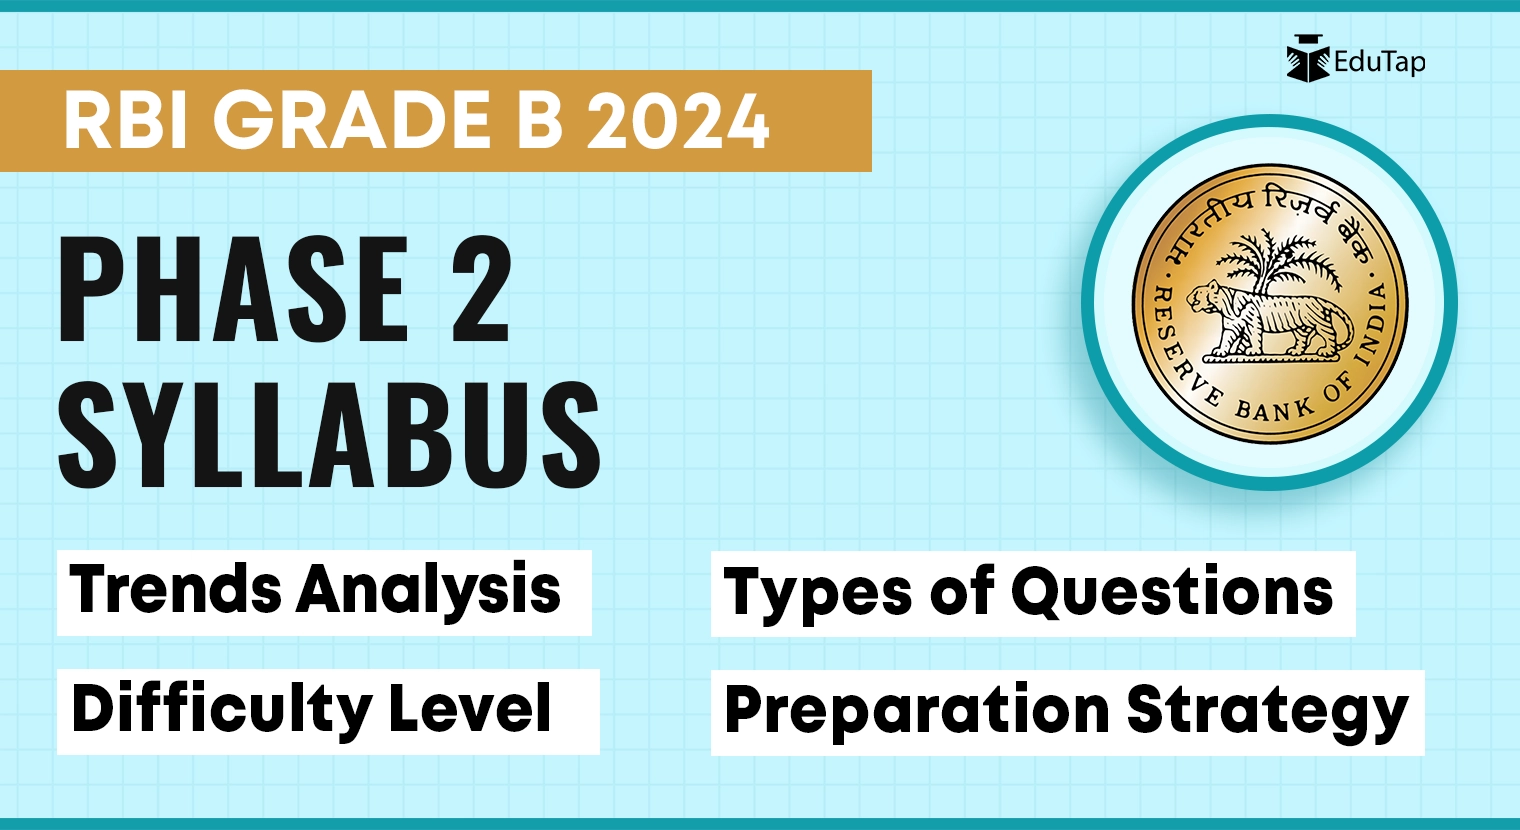 RBI Grade B Phase 2 syllabus